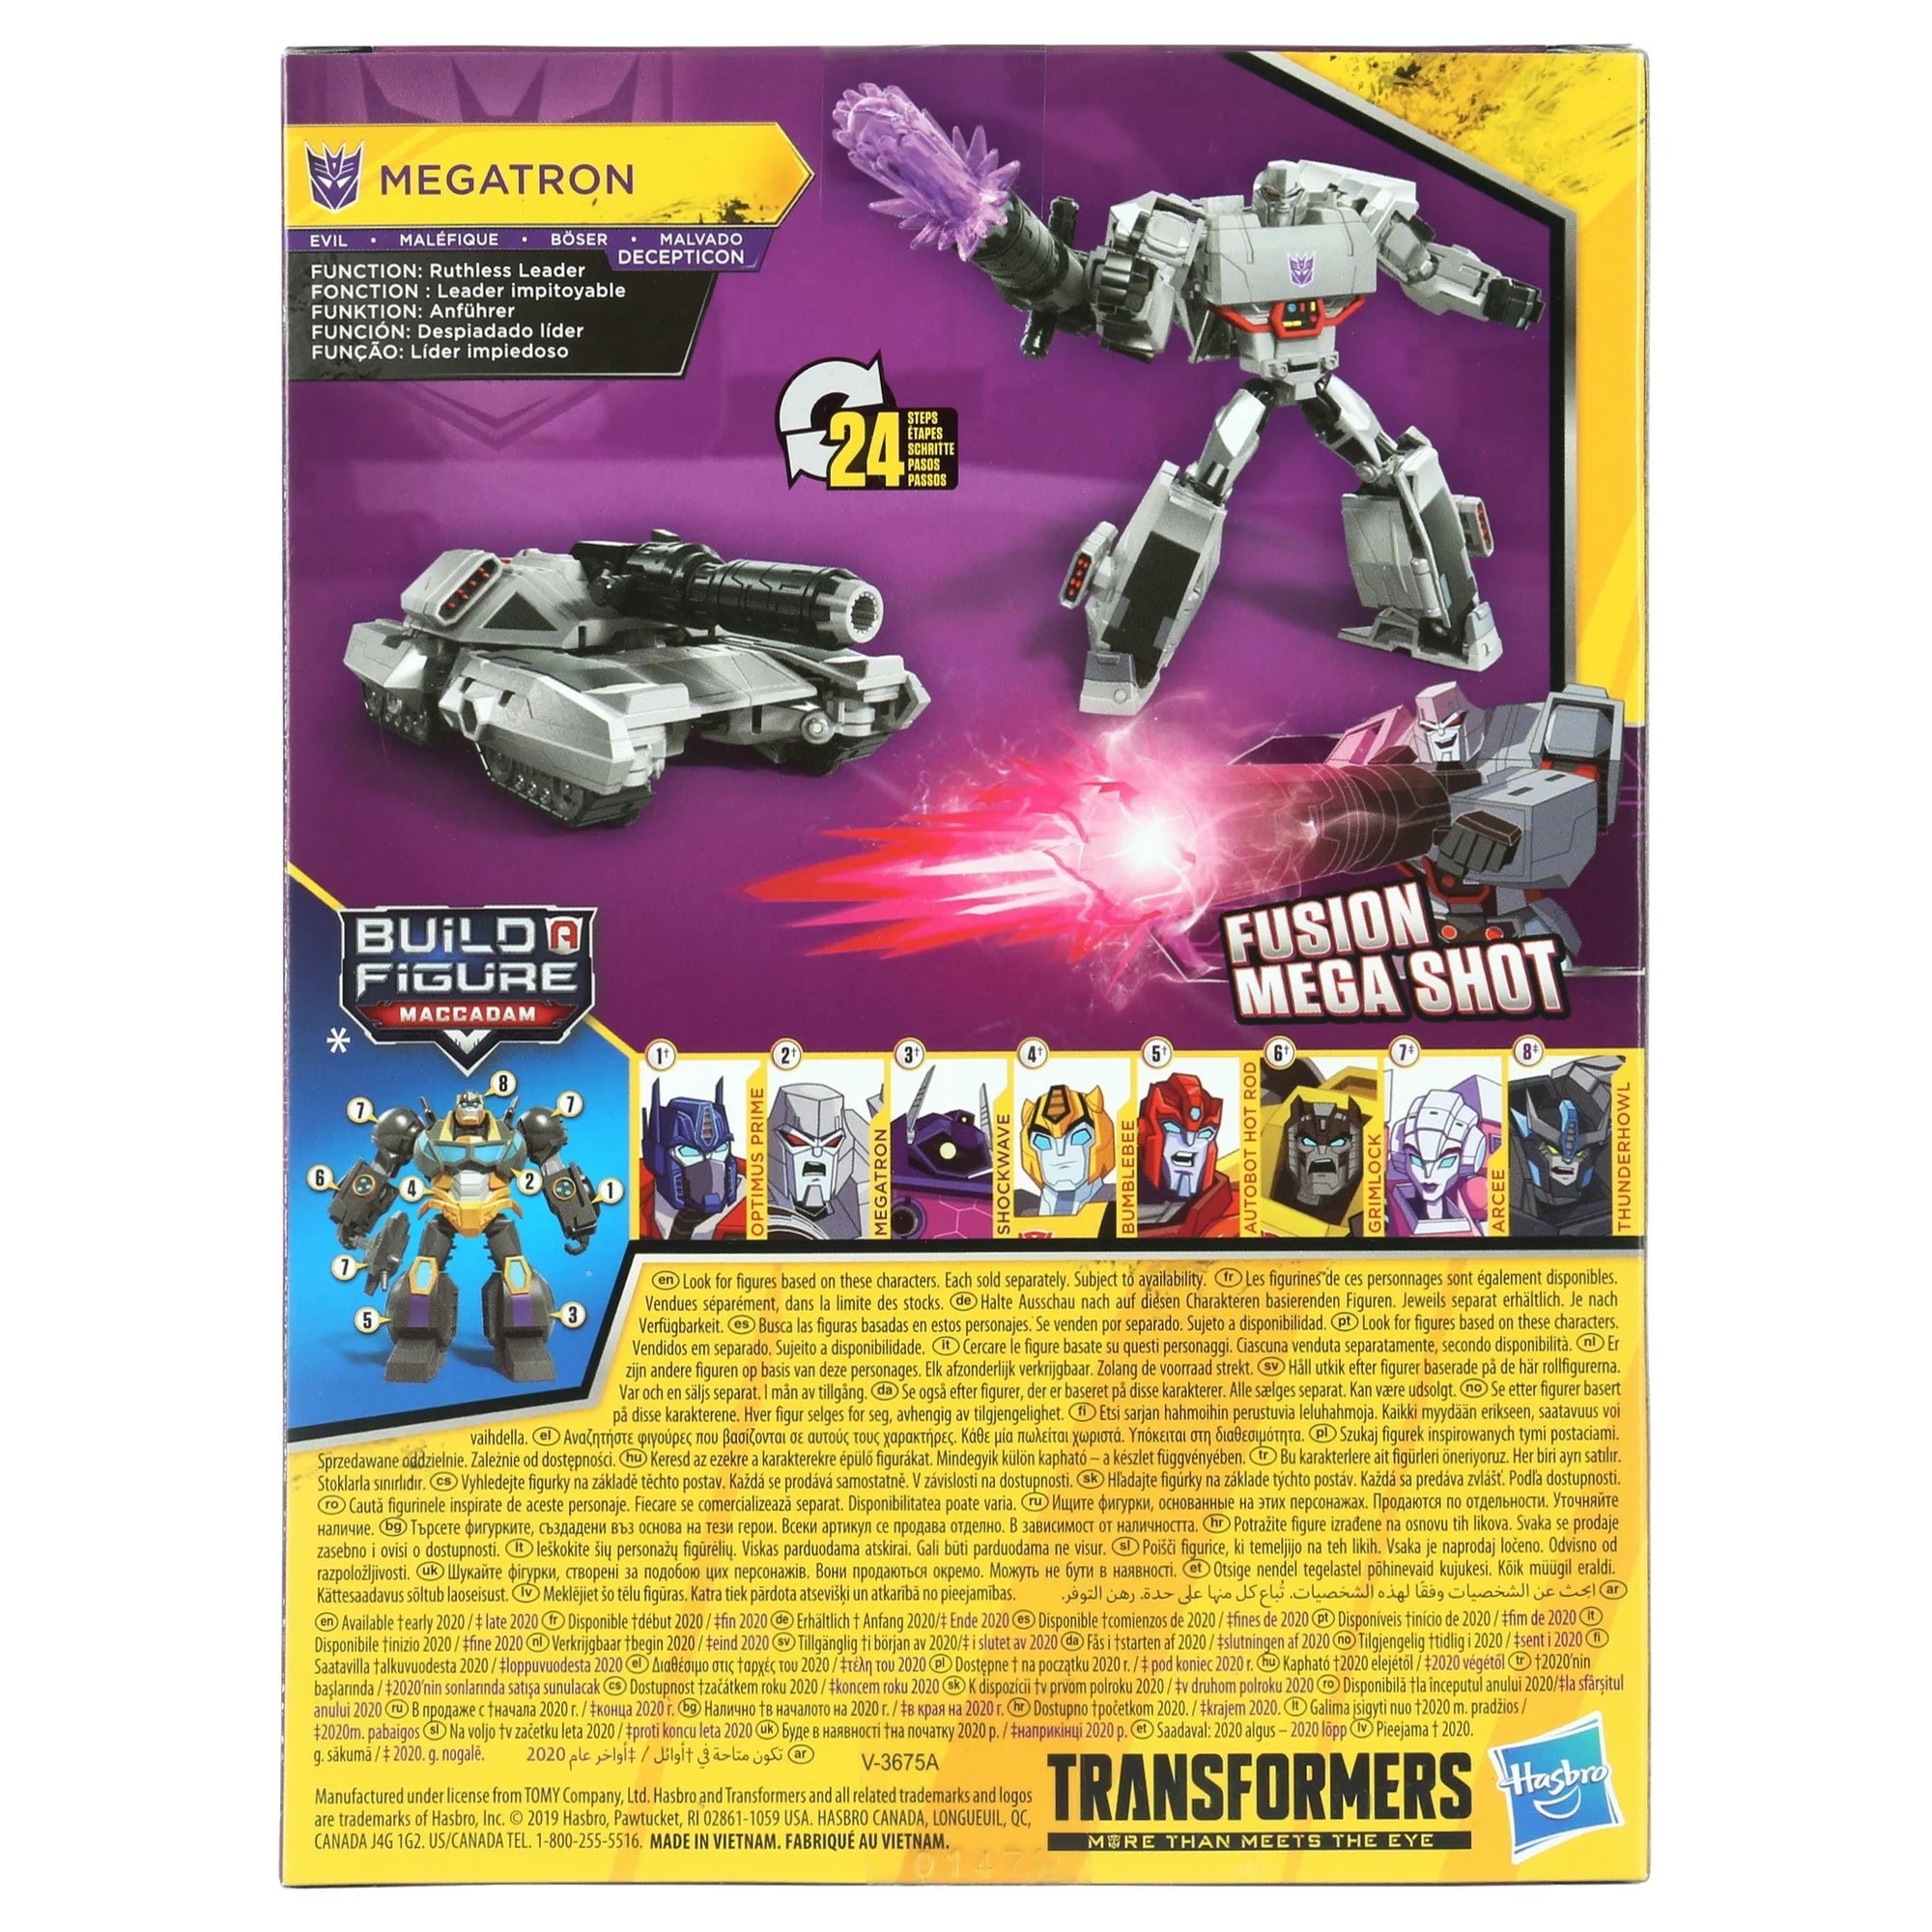 Transformers Bumblebee Cyberverse Adventures: Megatron Deluxe Figure